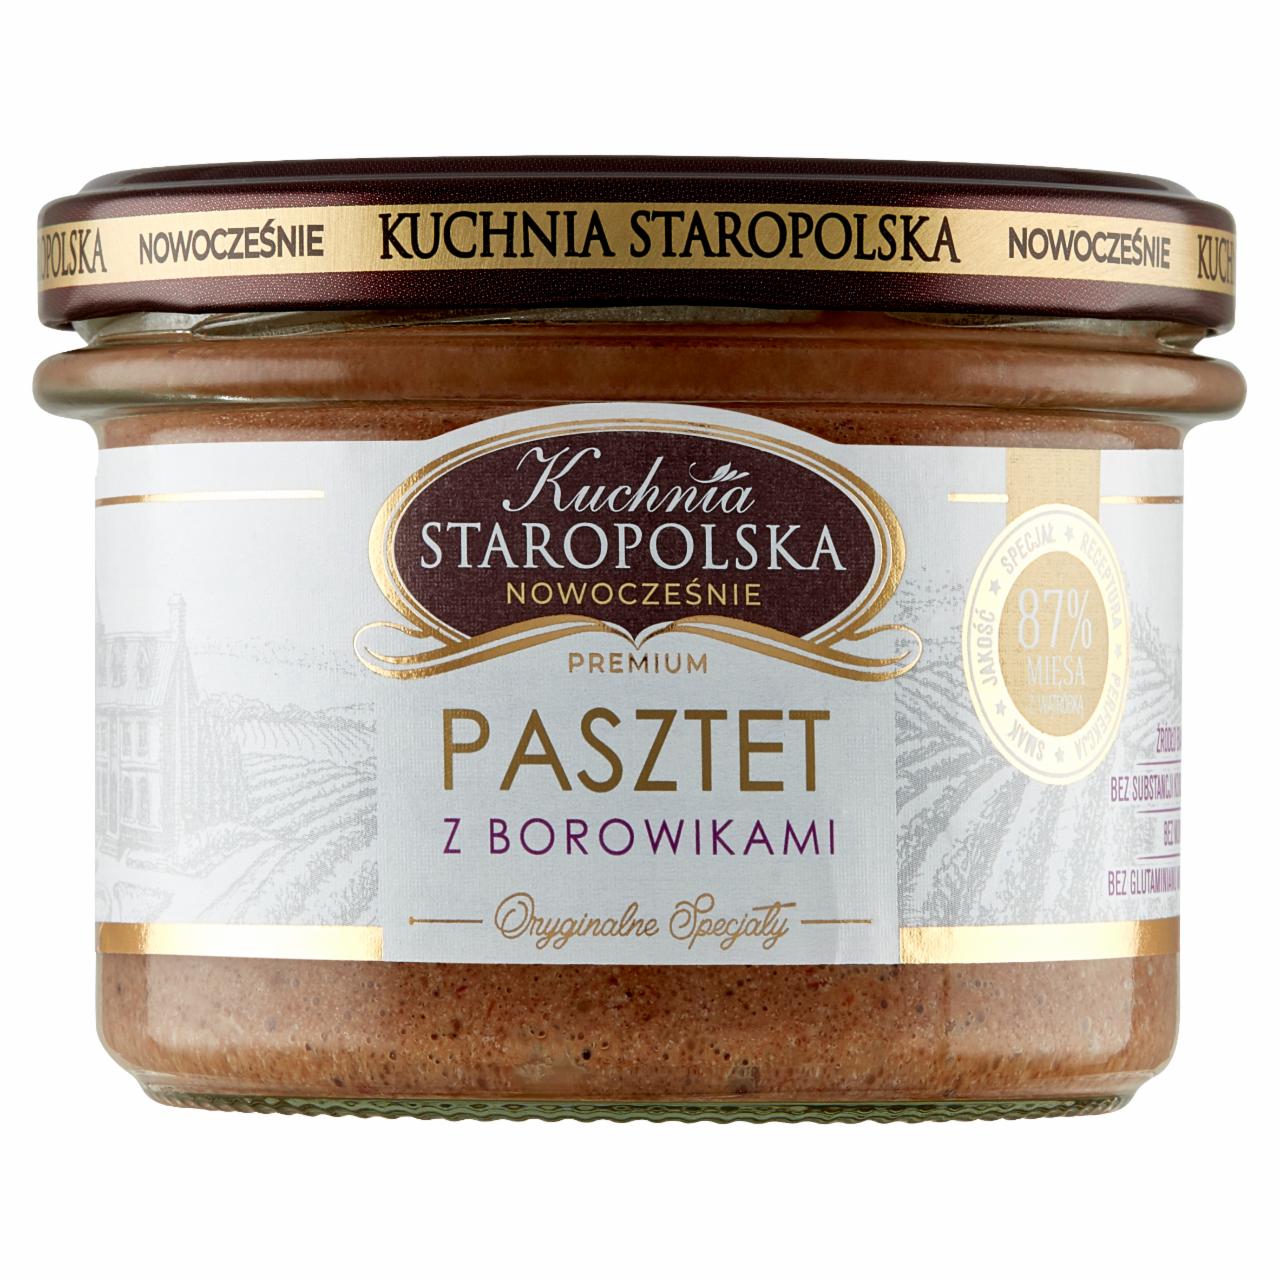 Zdjęcia - Kuchnia Staropolska Premium Pasztet z borowikami 160 g